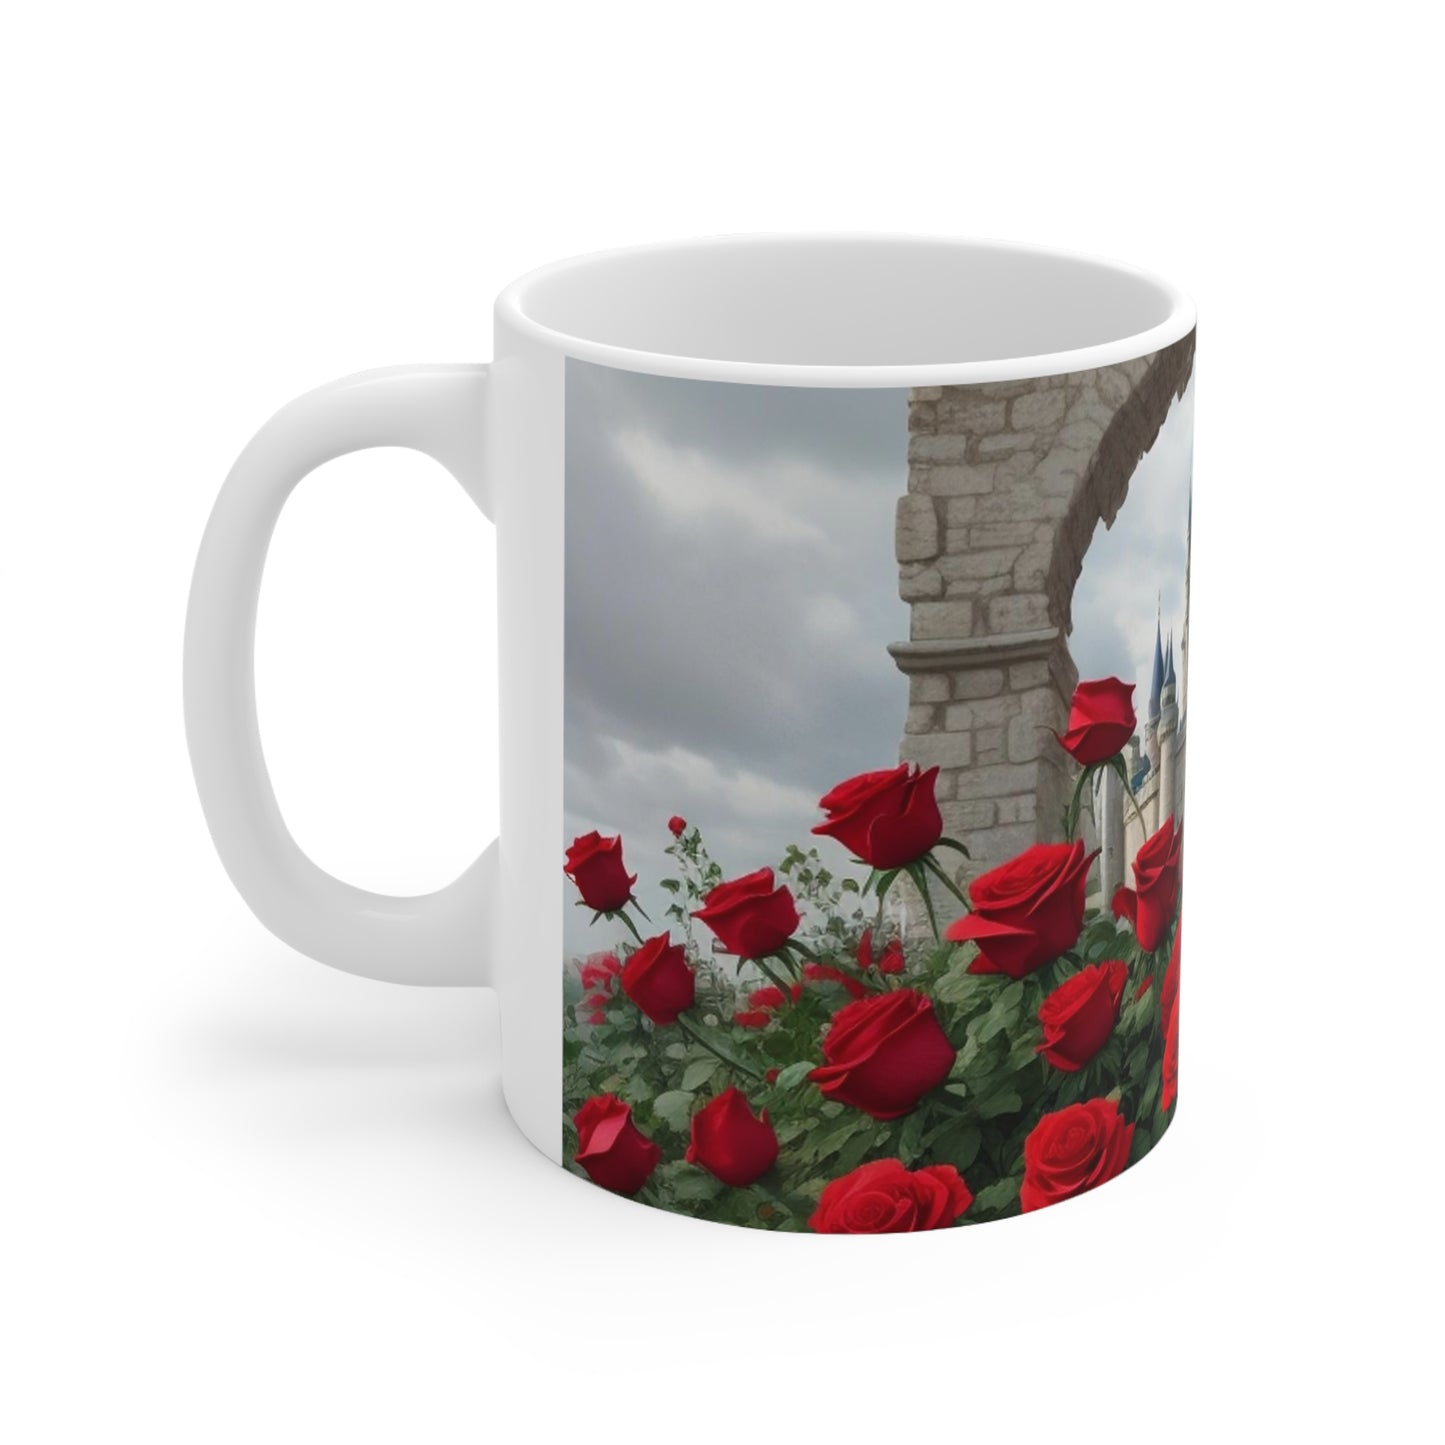 Red Roses Around Castle Mug - Ceramic Coffee Mug 11oz